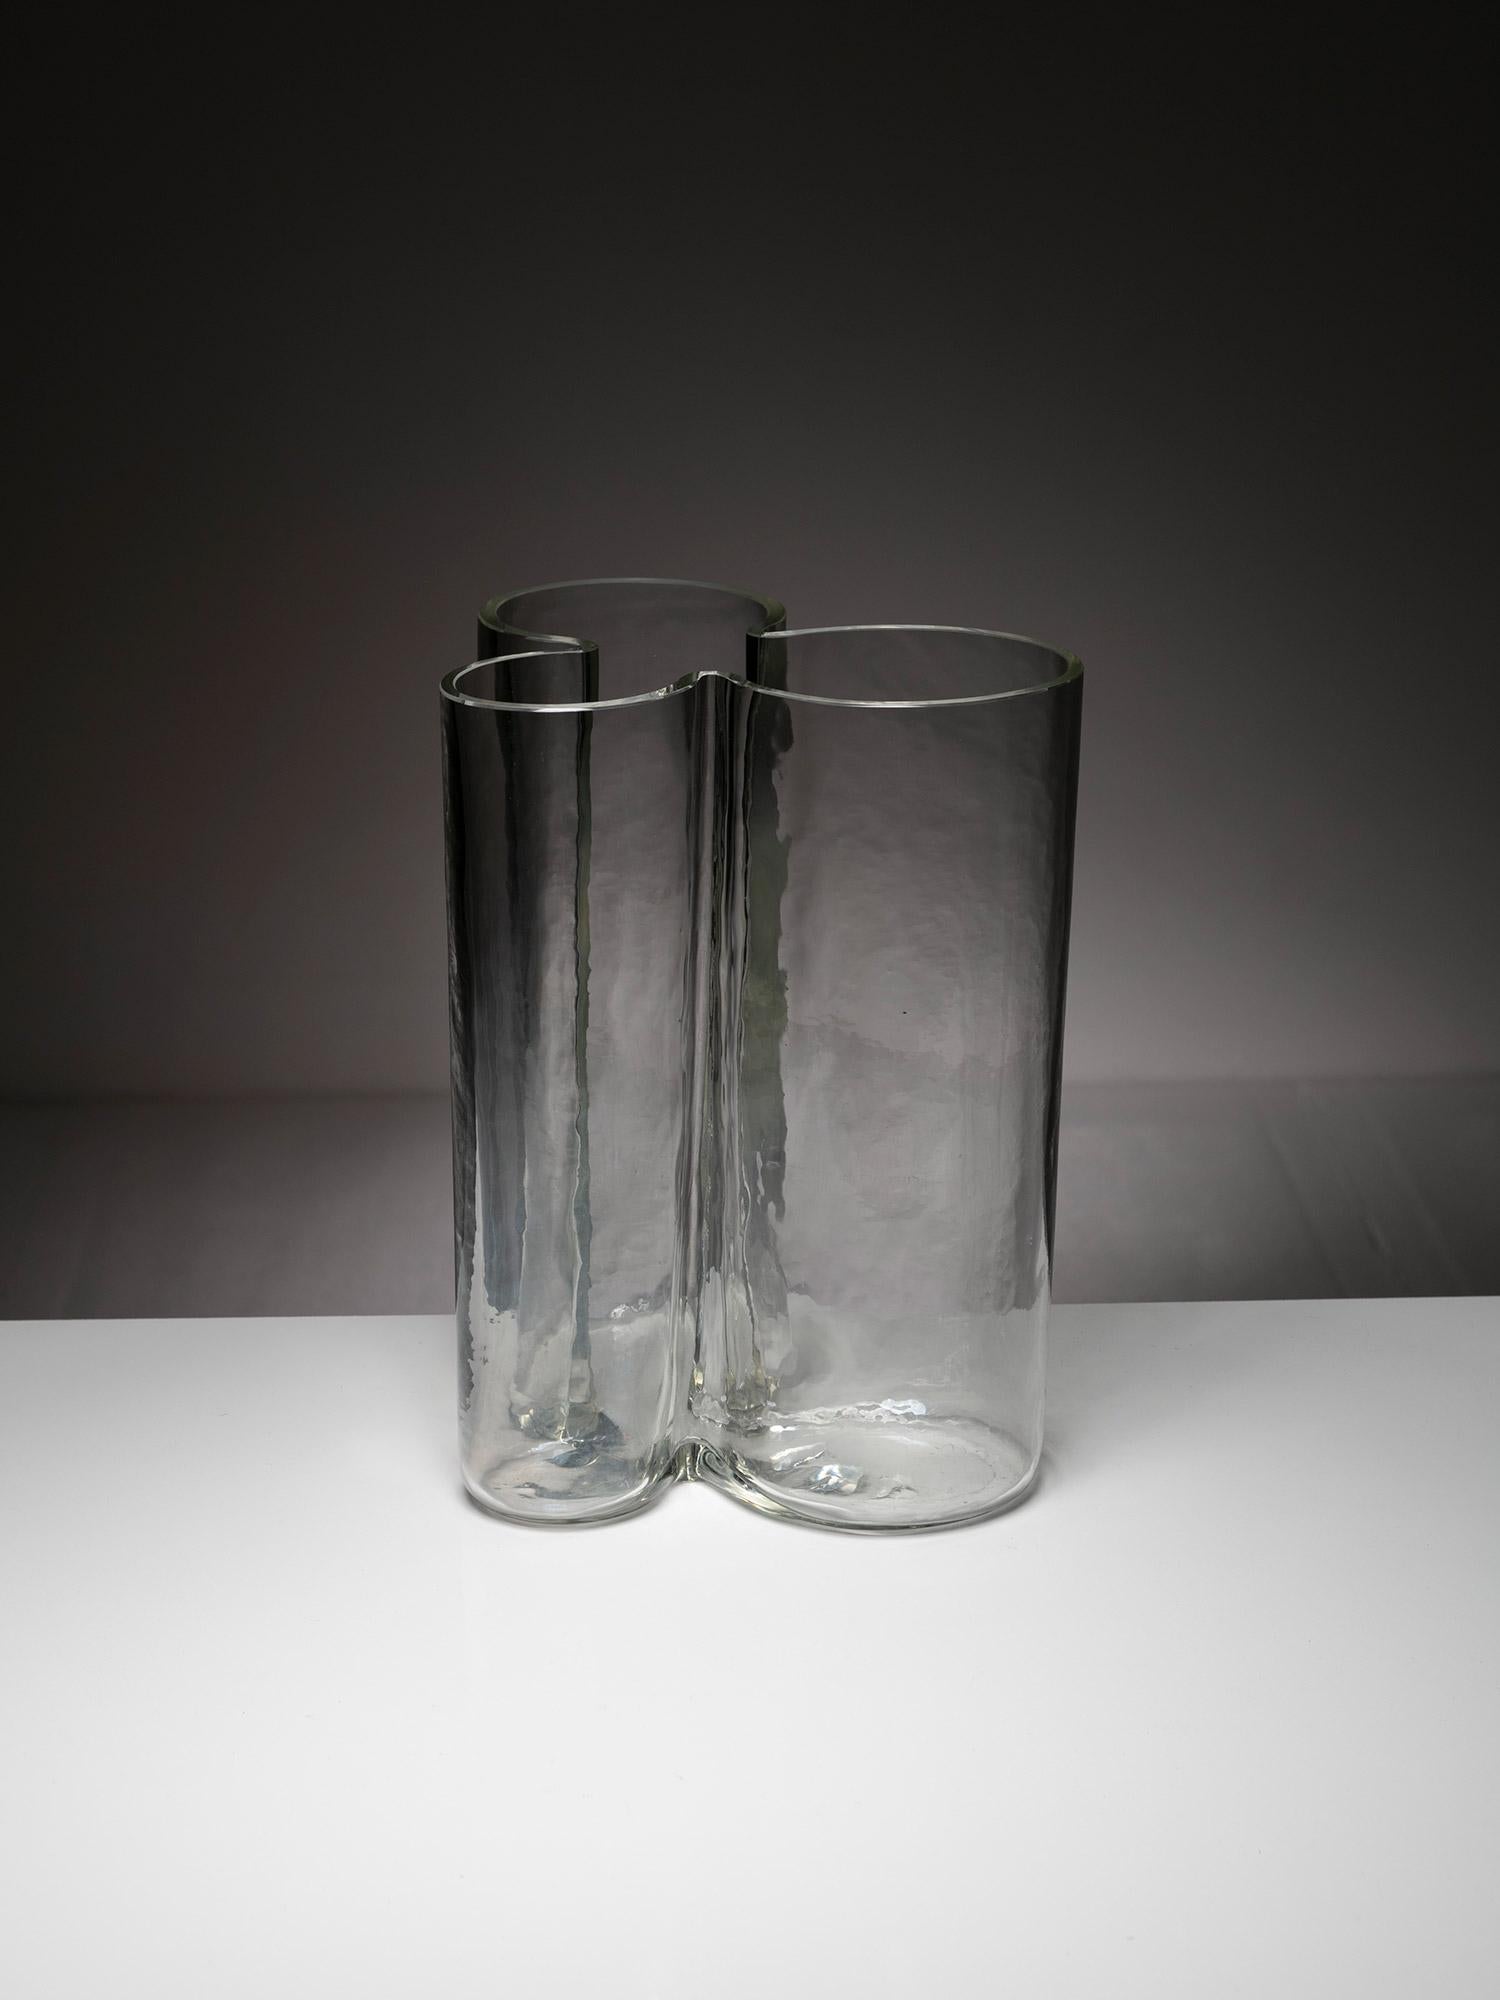 Große Vase aus Murano-Glas von Alfredo Barbini für Barbini.
Kleeblattförmiger Korpus aus dickem Glas mit natürlichen Unregelmäßigkeiten aus mundgeblasenem Glas